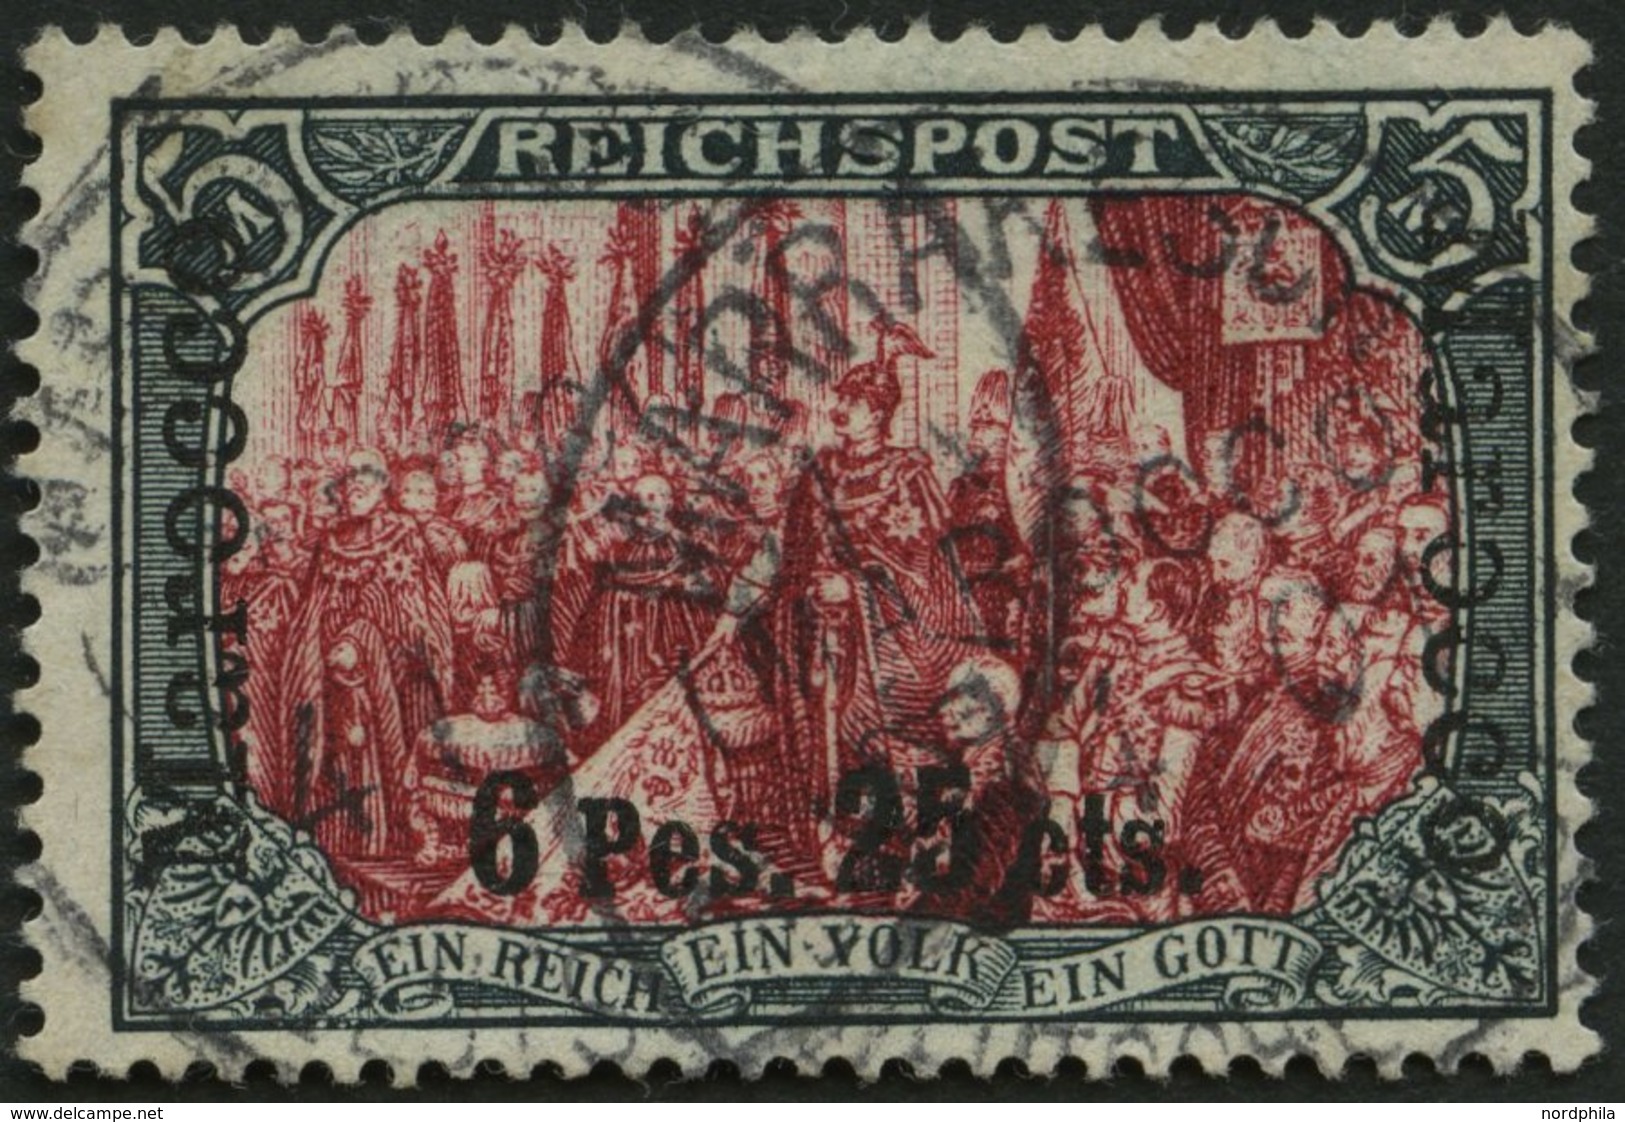 DP IN MAROKKO 19I/I O, 1900, 6 P. 25 C. Auf 5 M., Type I, Stempel MARRAKESCH, Pracht, R!, Fotoattest Jäschke-L., Mi. 180 - Deutsche Post In Marokko